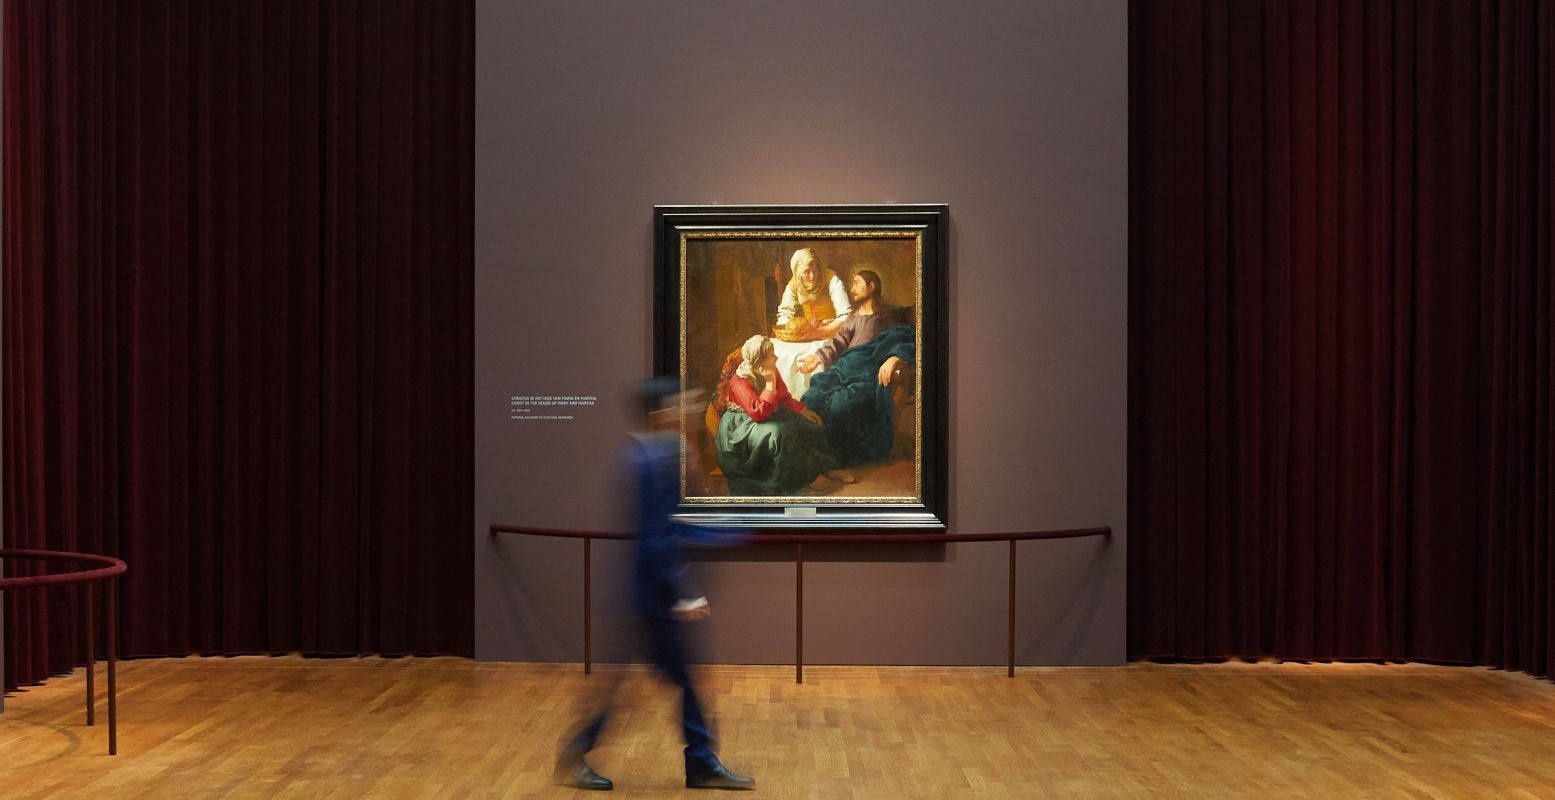 De zalen van de expositie zijn aangepast aan de schilderijen waardoor de doeken bijna tot leven komen. Foto: Rijksmuseum Amsterdam © Henk Wildschut